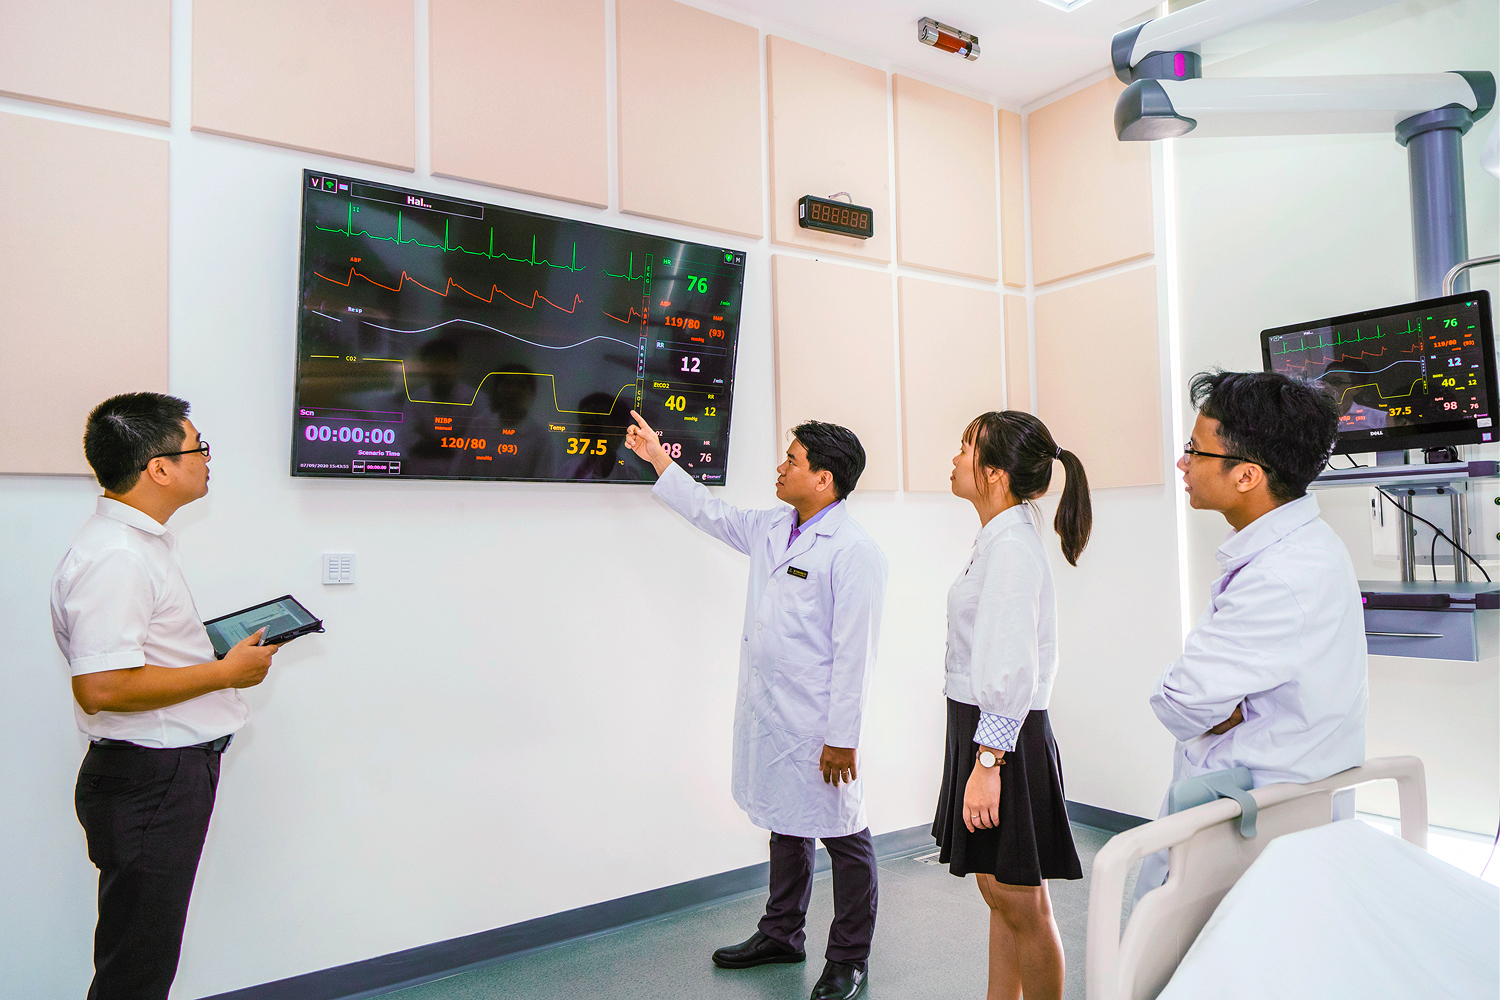 工作站显示器可实时显示医学数据，便于学生诊断技能的演练，并就最佳治疗方案展开协作讨论